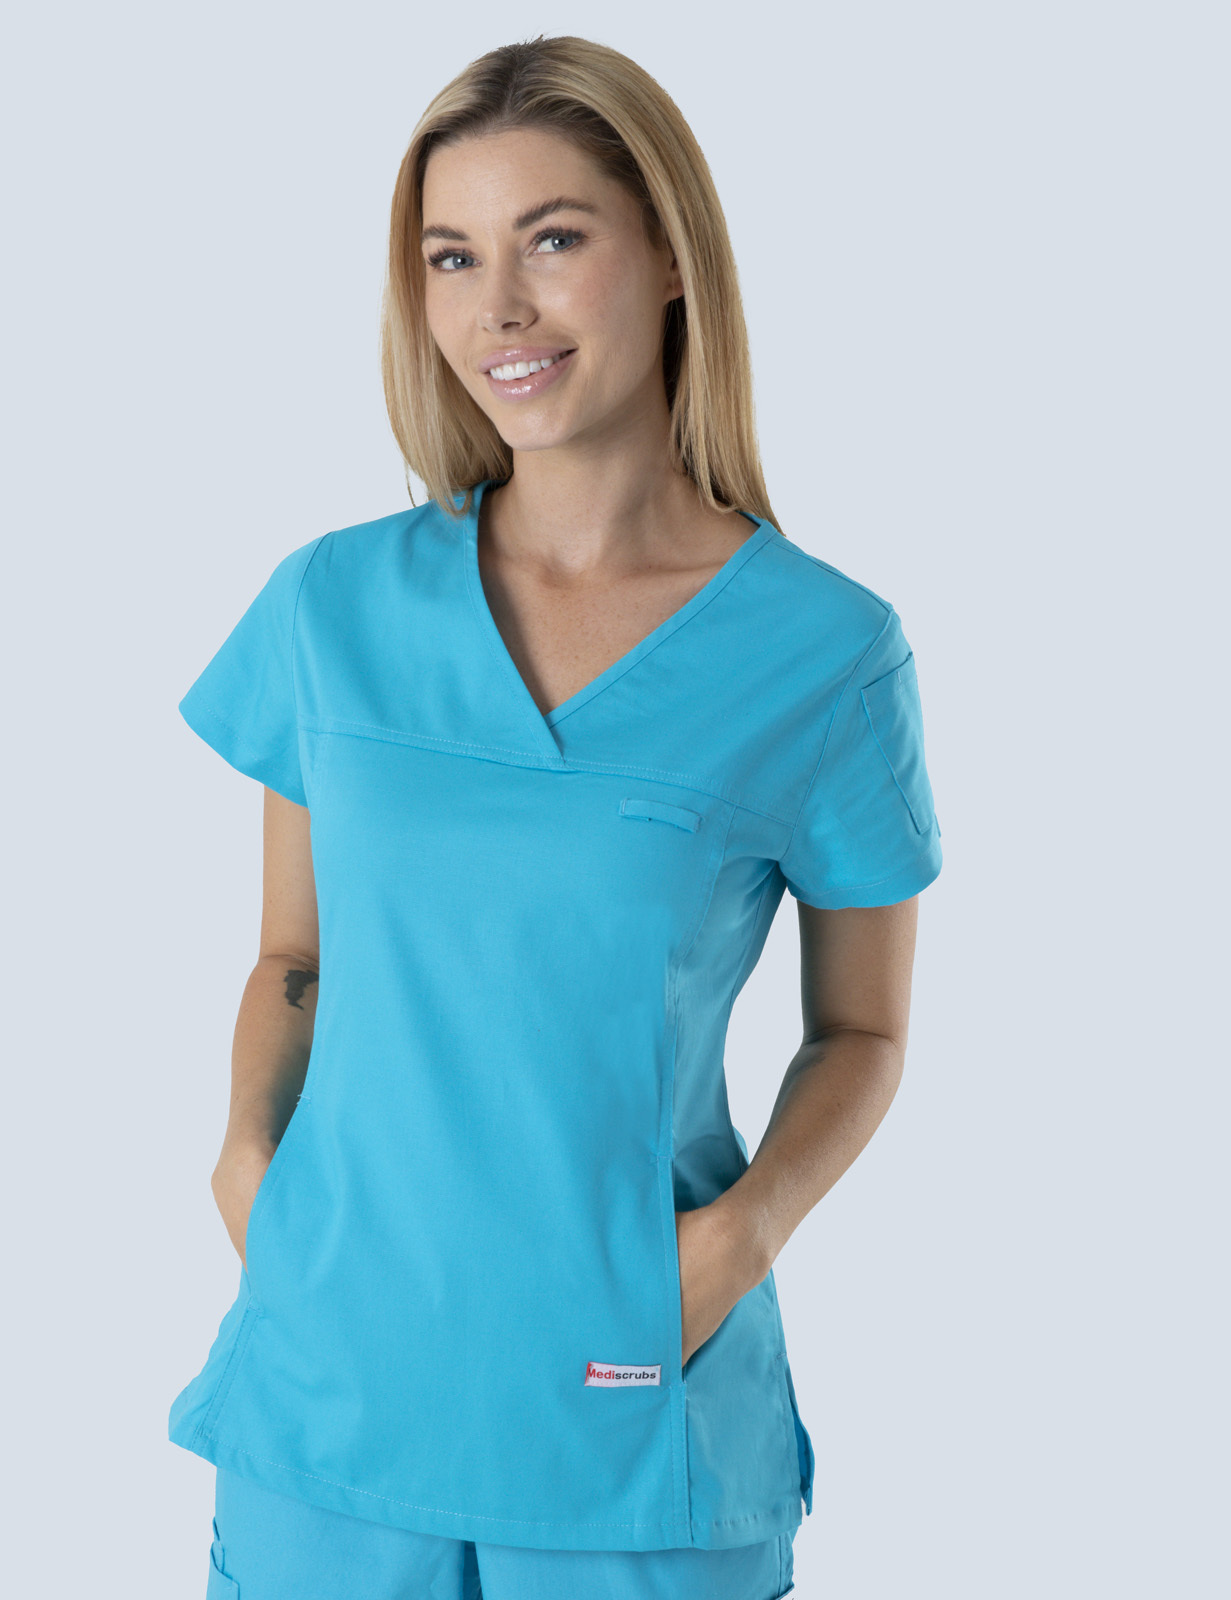 Queensland Children's Hospital Emergency Department Nurse Practitioner Uniform Top Bundle  (Women's Fit Top in Aqua incl Logos)